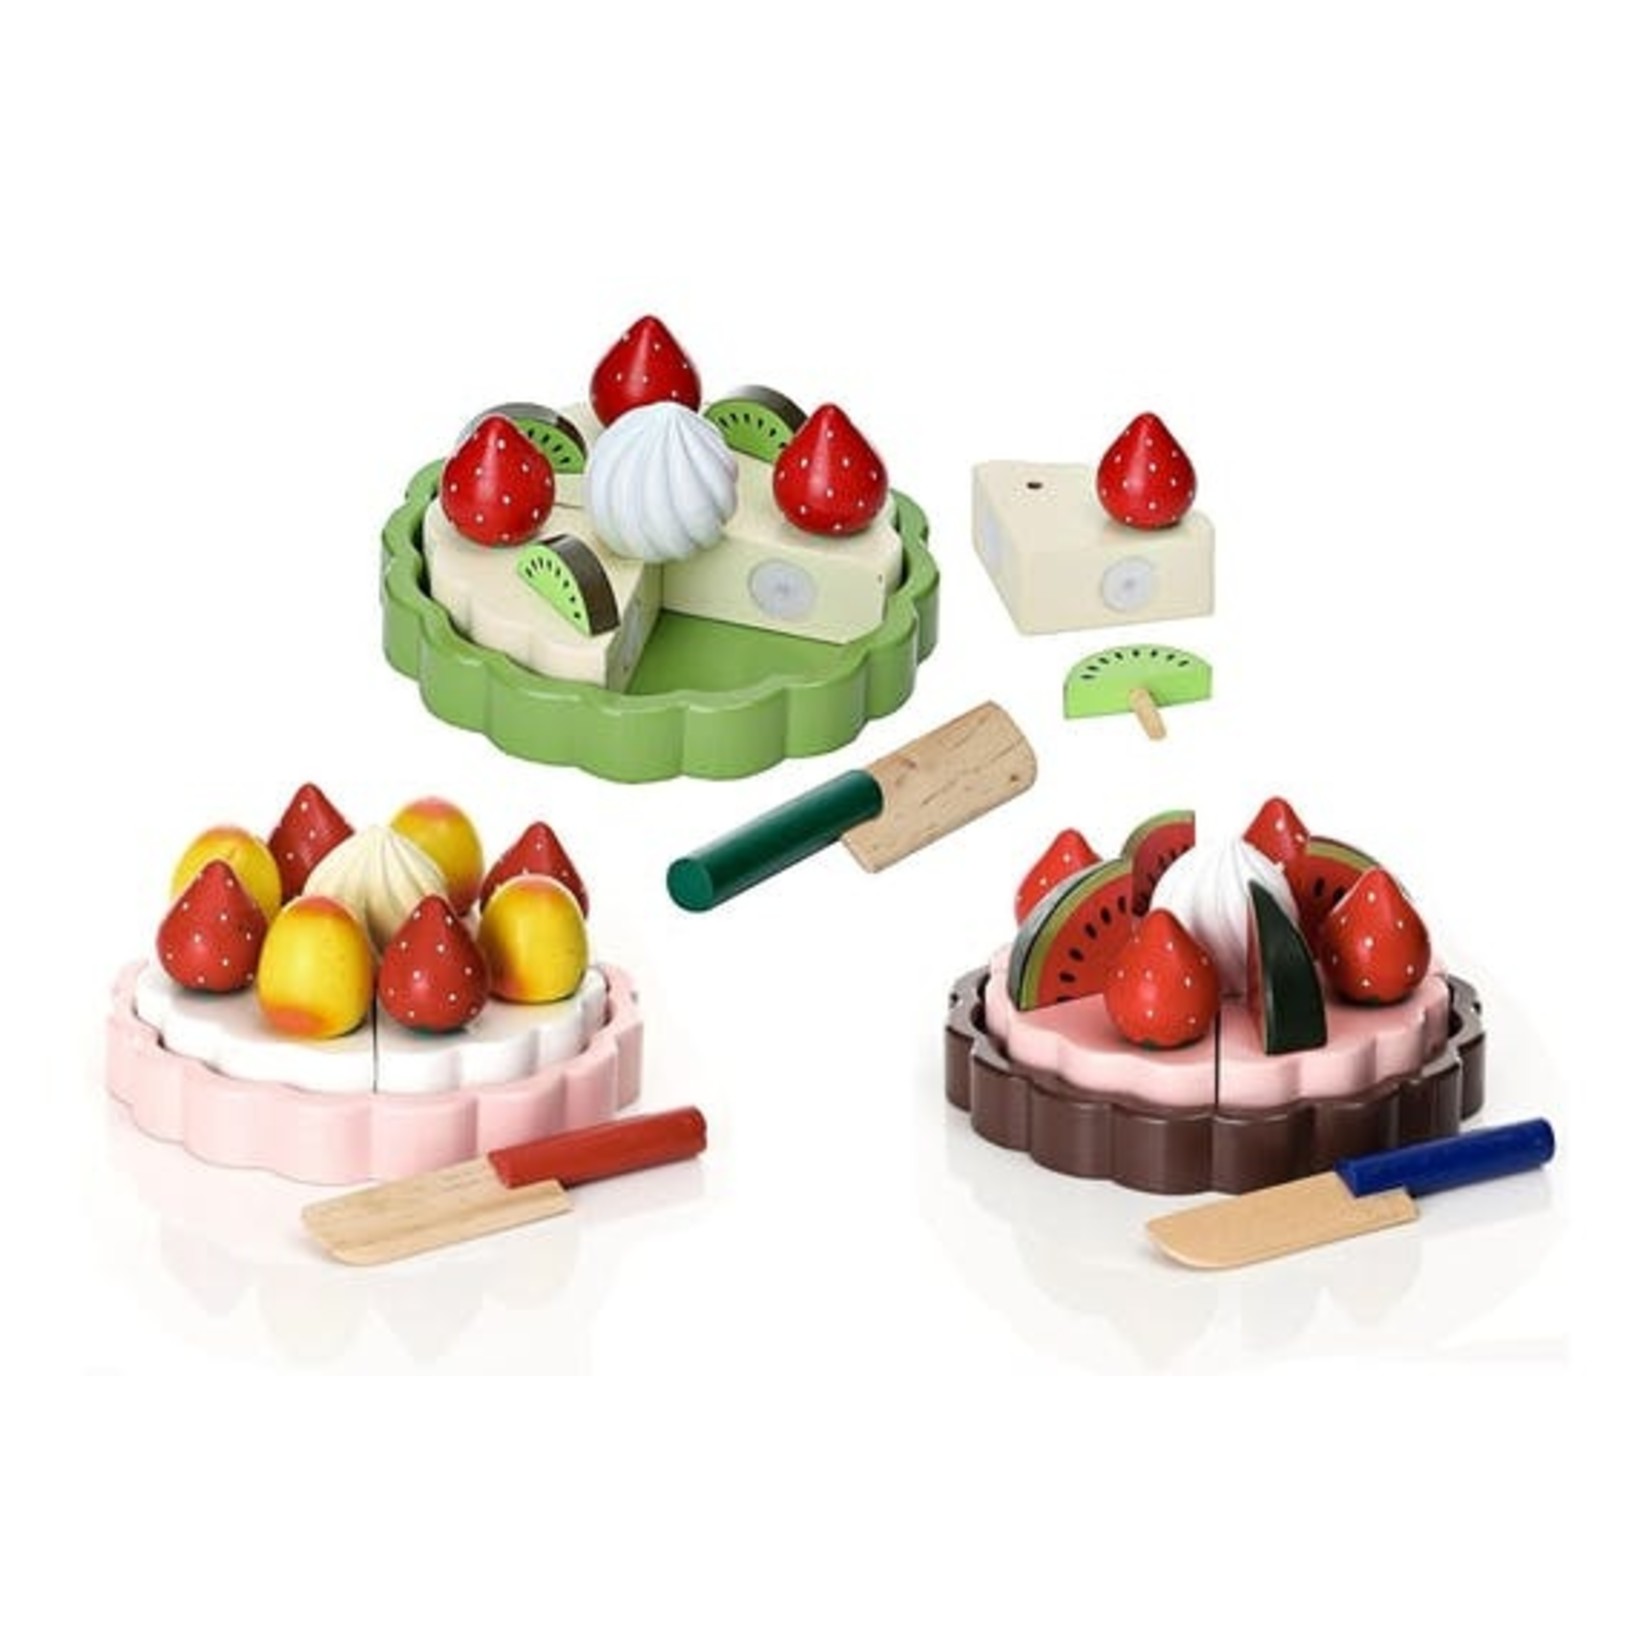 Magni Aps Magni Aps houten speeltaart chocolade met fruit